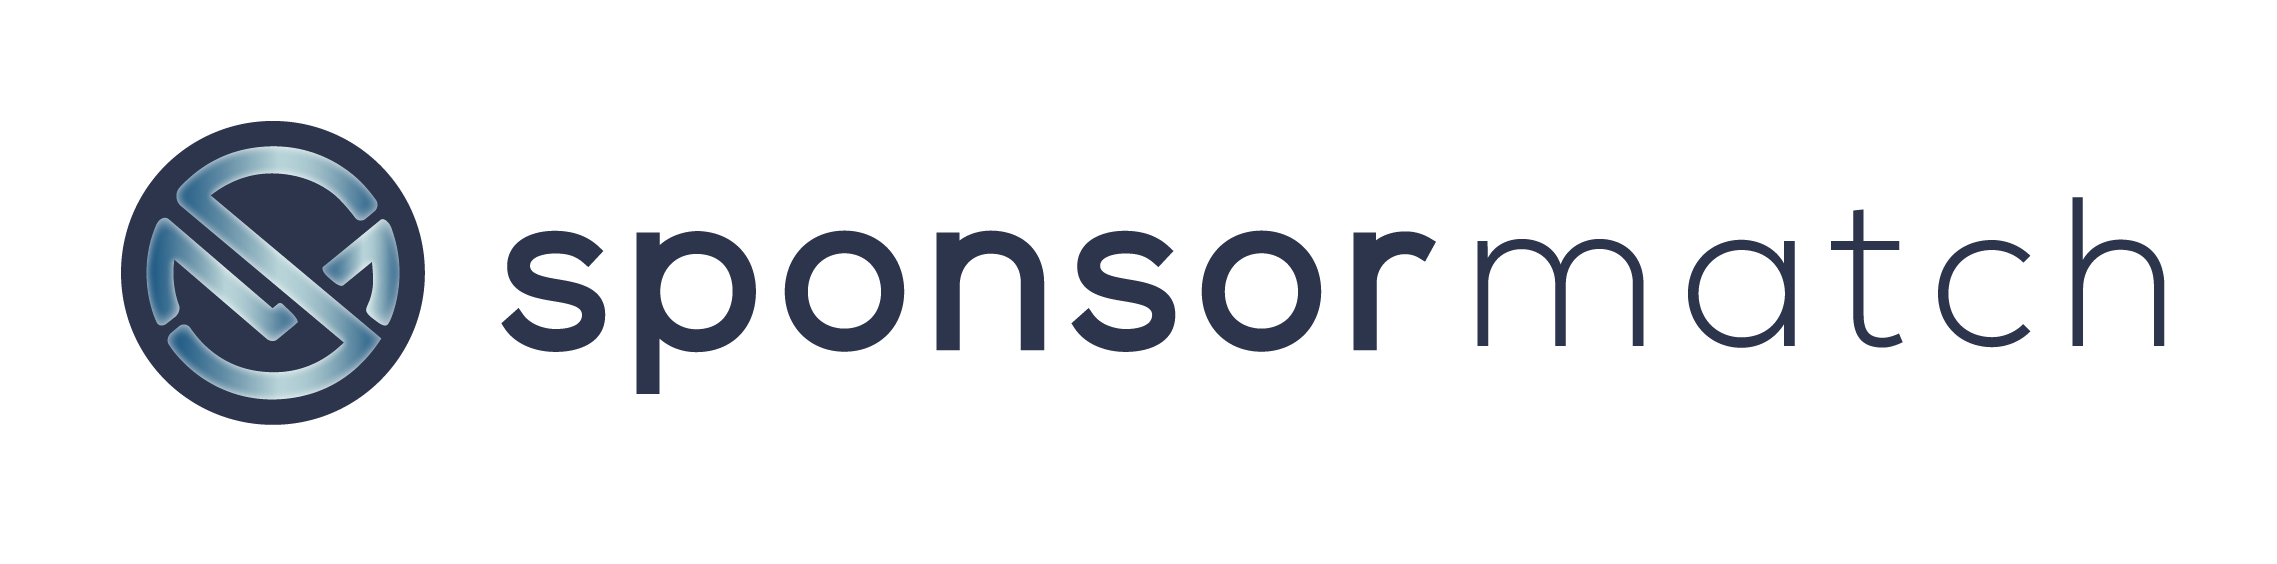 blue sponsor match logo horizontal